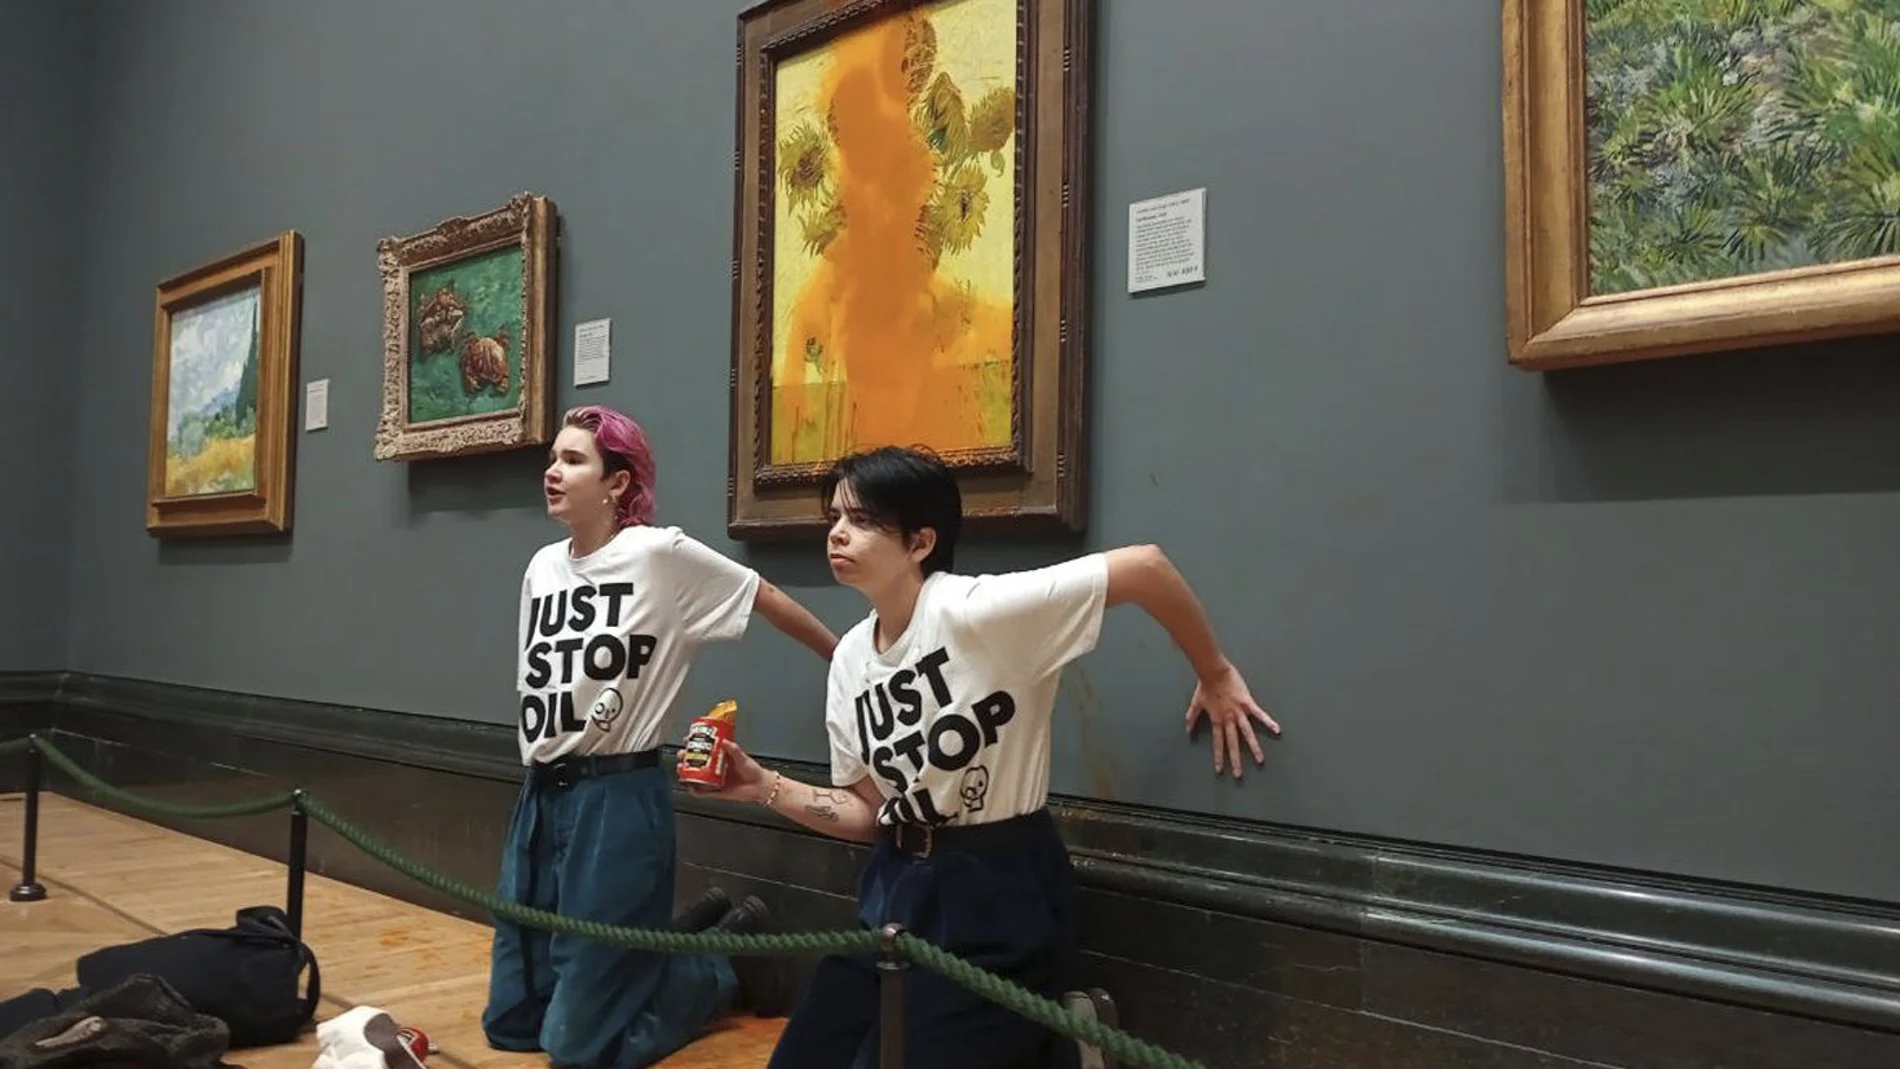 «Los girasoles», de Van Gogh, vuelven a salir en los titulares, aunque esta vez no tiene que ver con ataques de activistas